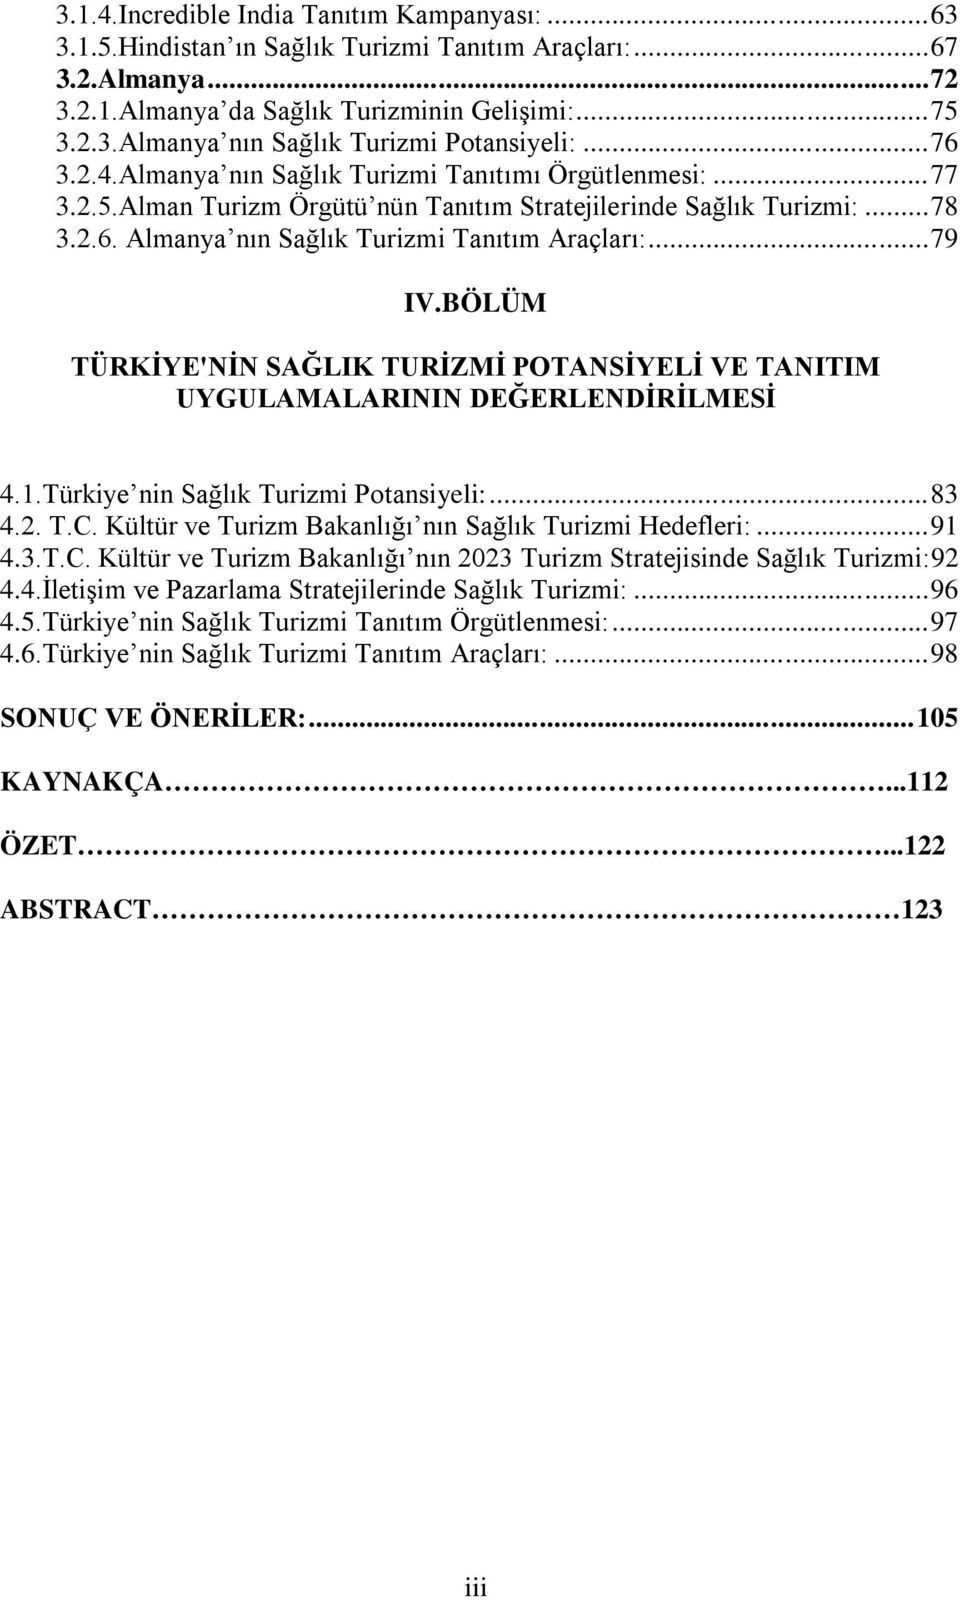 BÖLÜM TÜRKİYE'NİN SAĞLIK TURİZMİ POTANSİYELİ VE TANITIM UYGULAMALARININ DEĞERLENDİRİLMESİ 4.1.Türkiye nin Sağlık Turizmi Potansiyeli:...83 4.2. T.C.